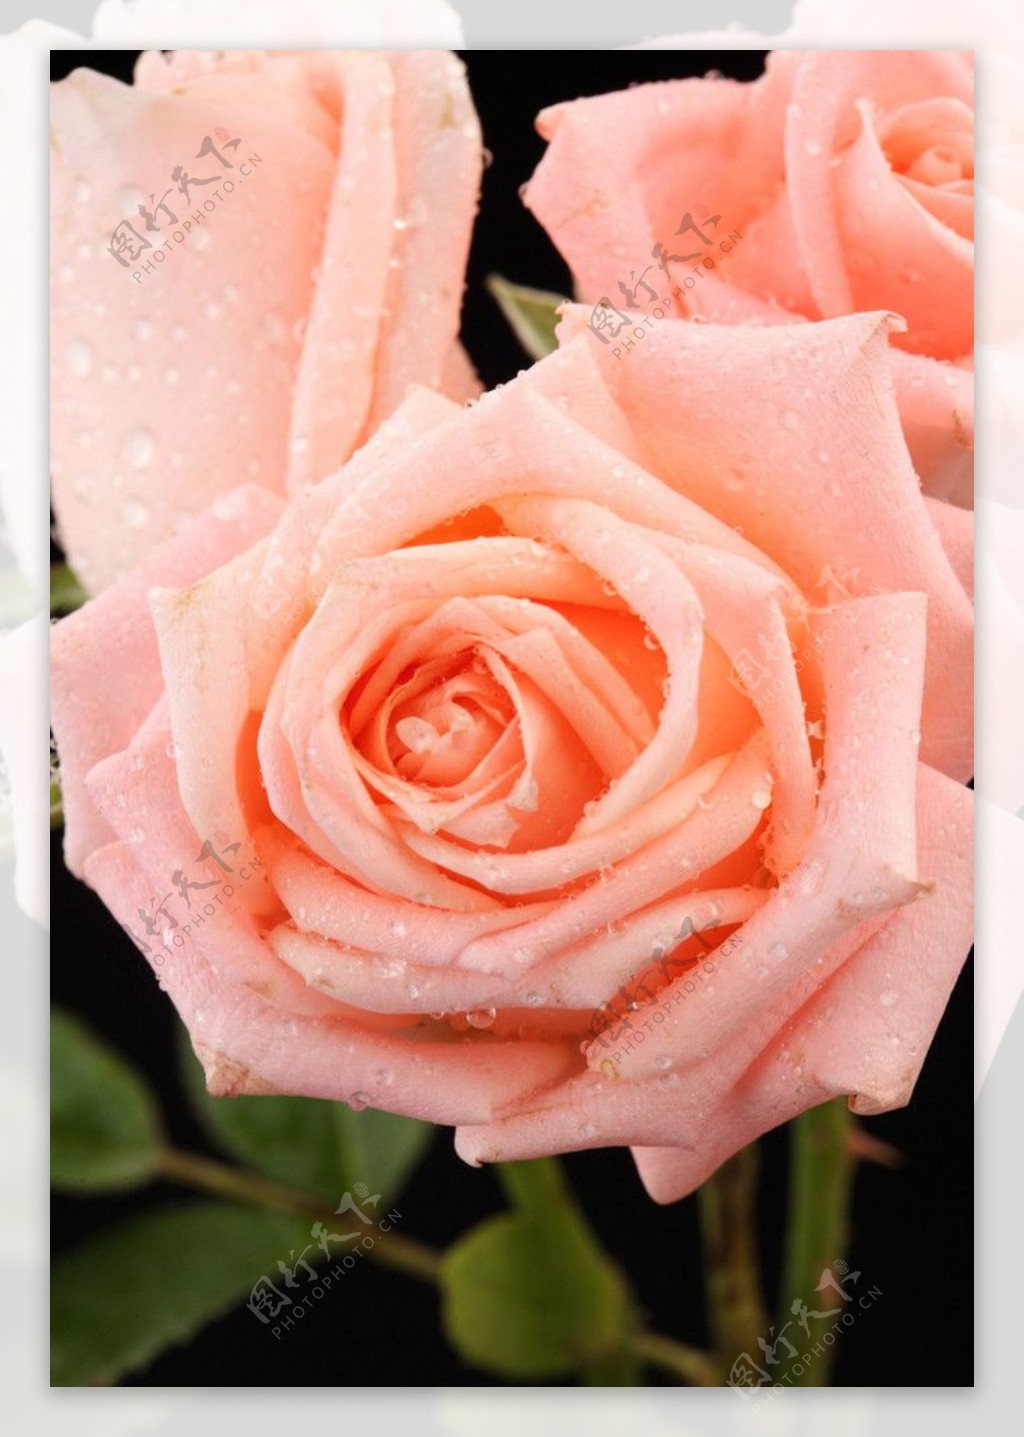 玫瑰花蕊图片